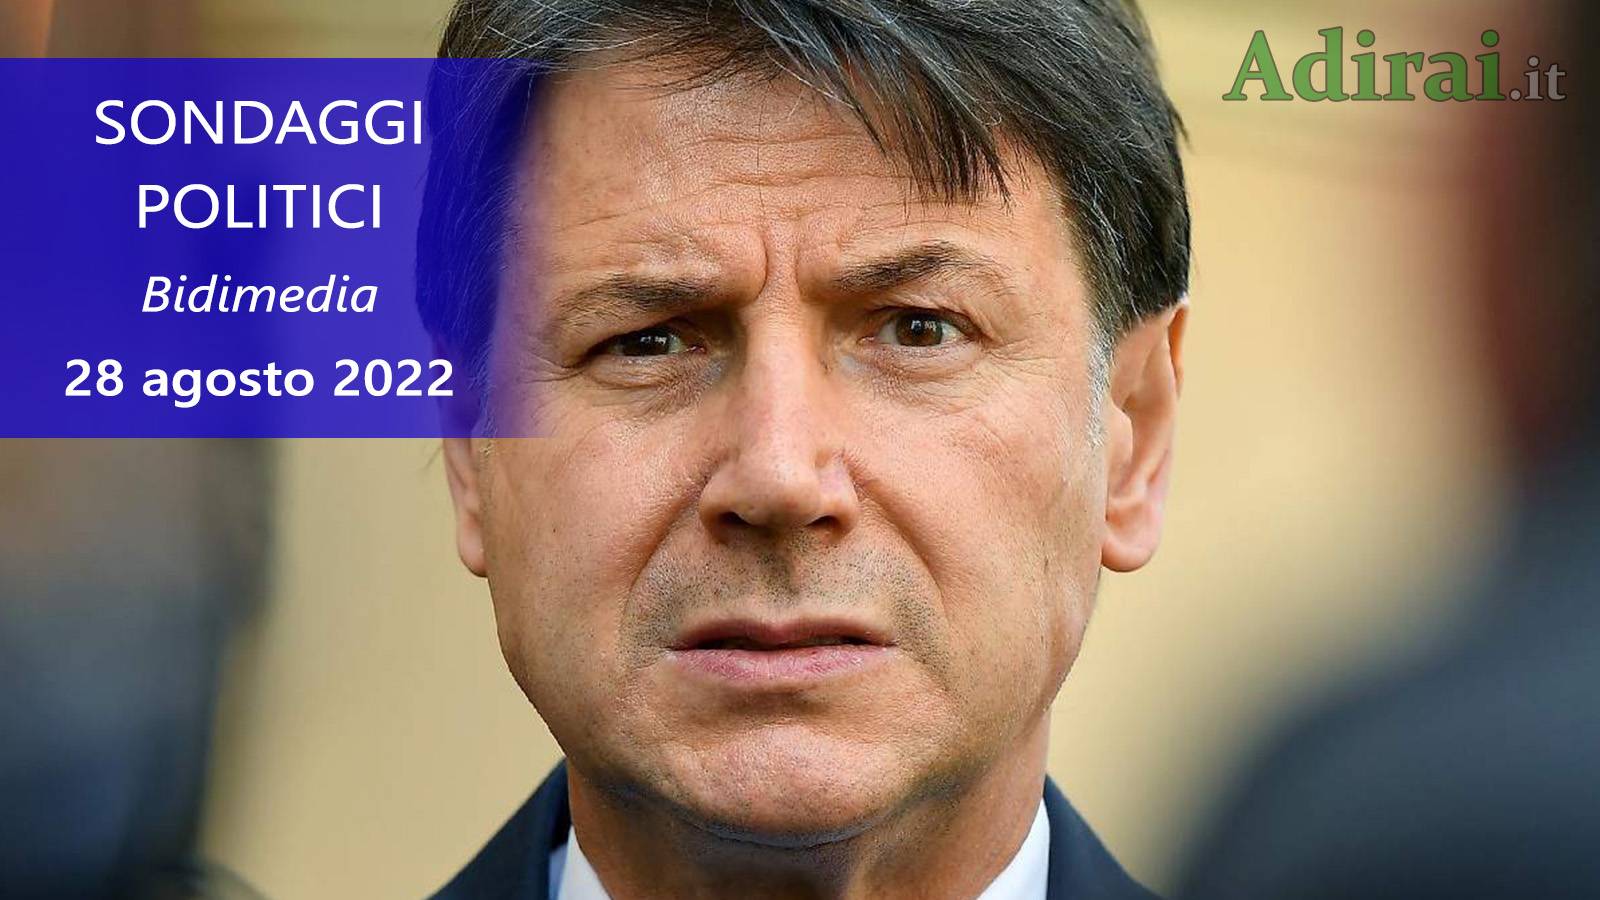 ultimi sondaggi politici 28 agosto 2022 bidimedia di tutti i partiti italiani